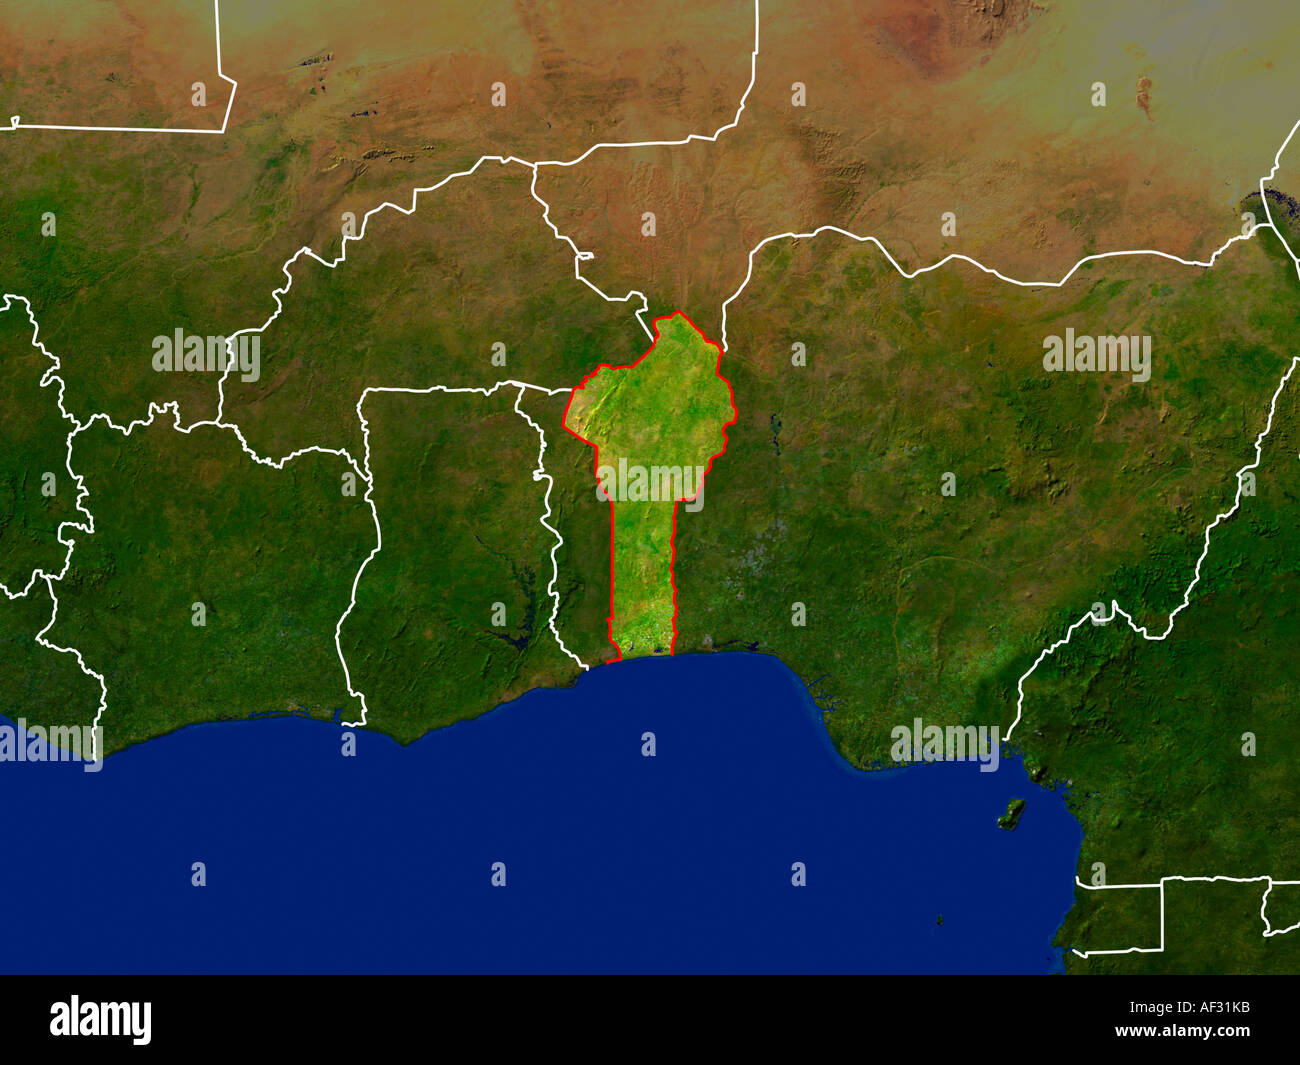 Ha evidenziato un'immagine satellitare del Benin Foto Stock